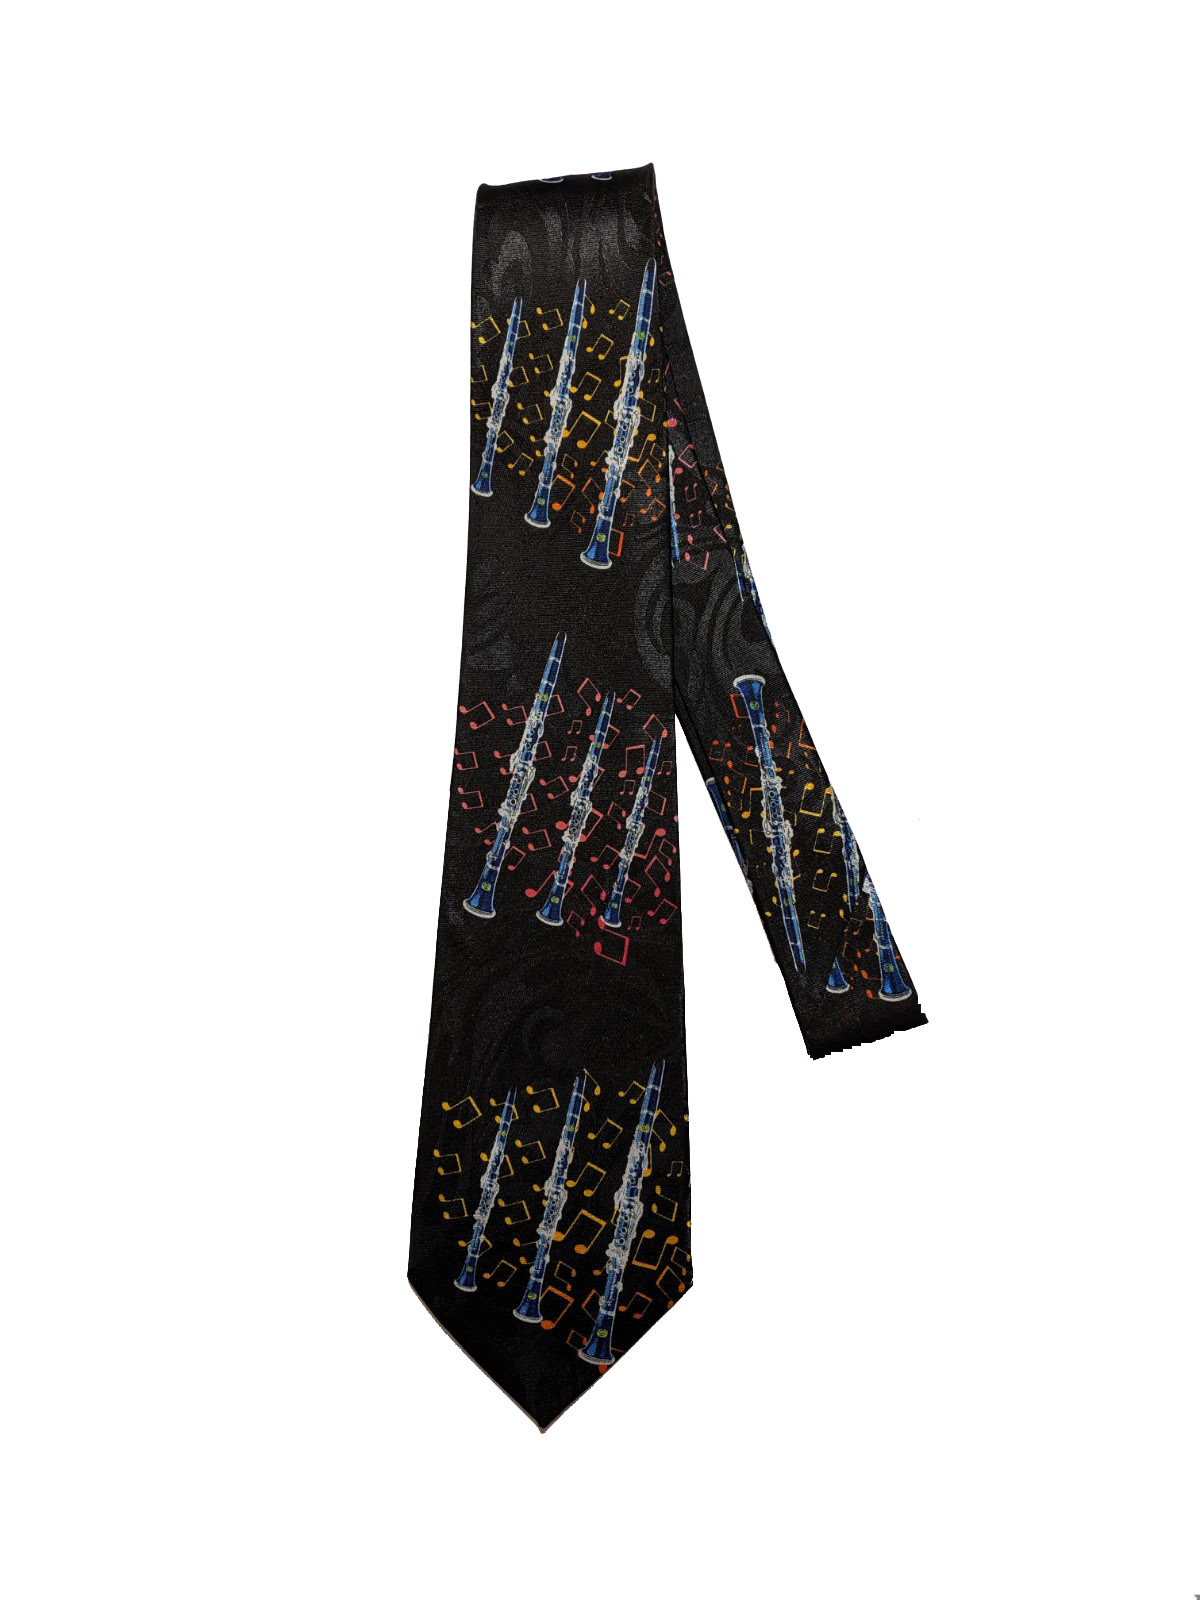 Clarinet Long Tie - Buy Drama Gear